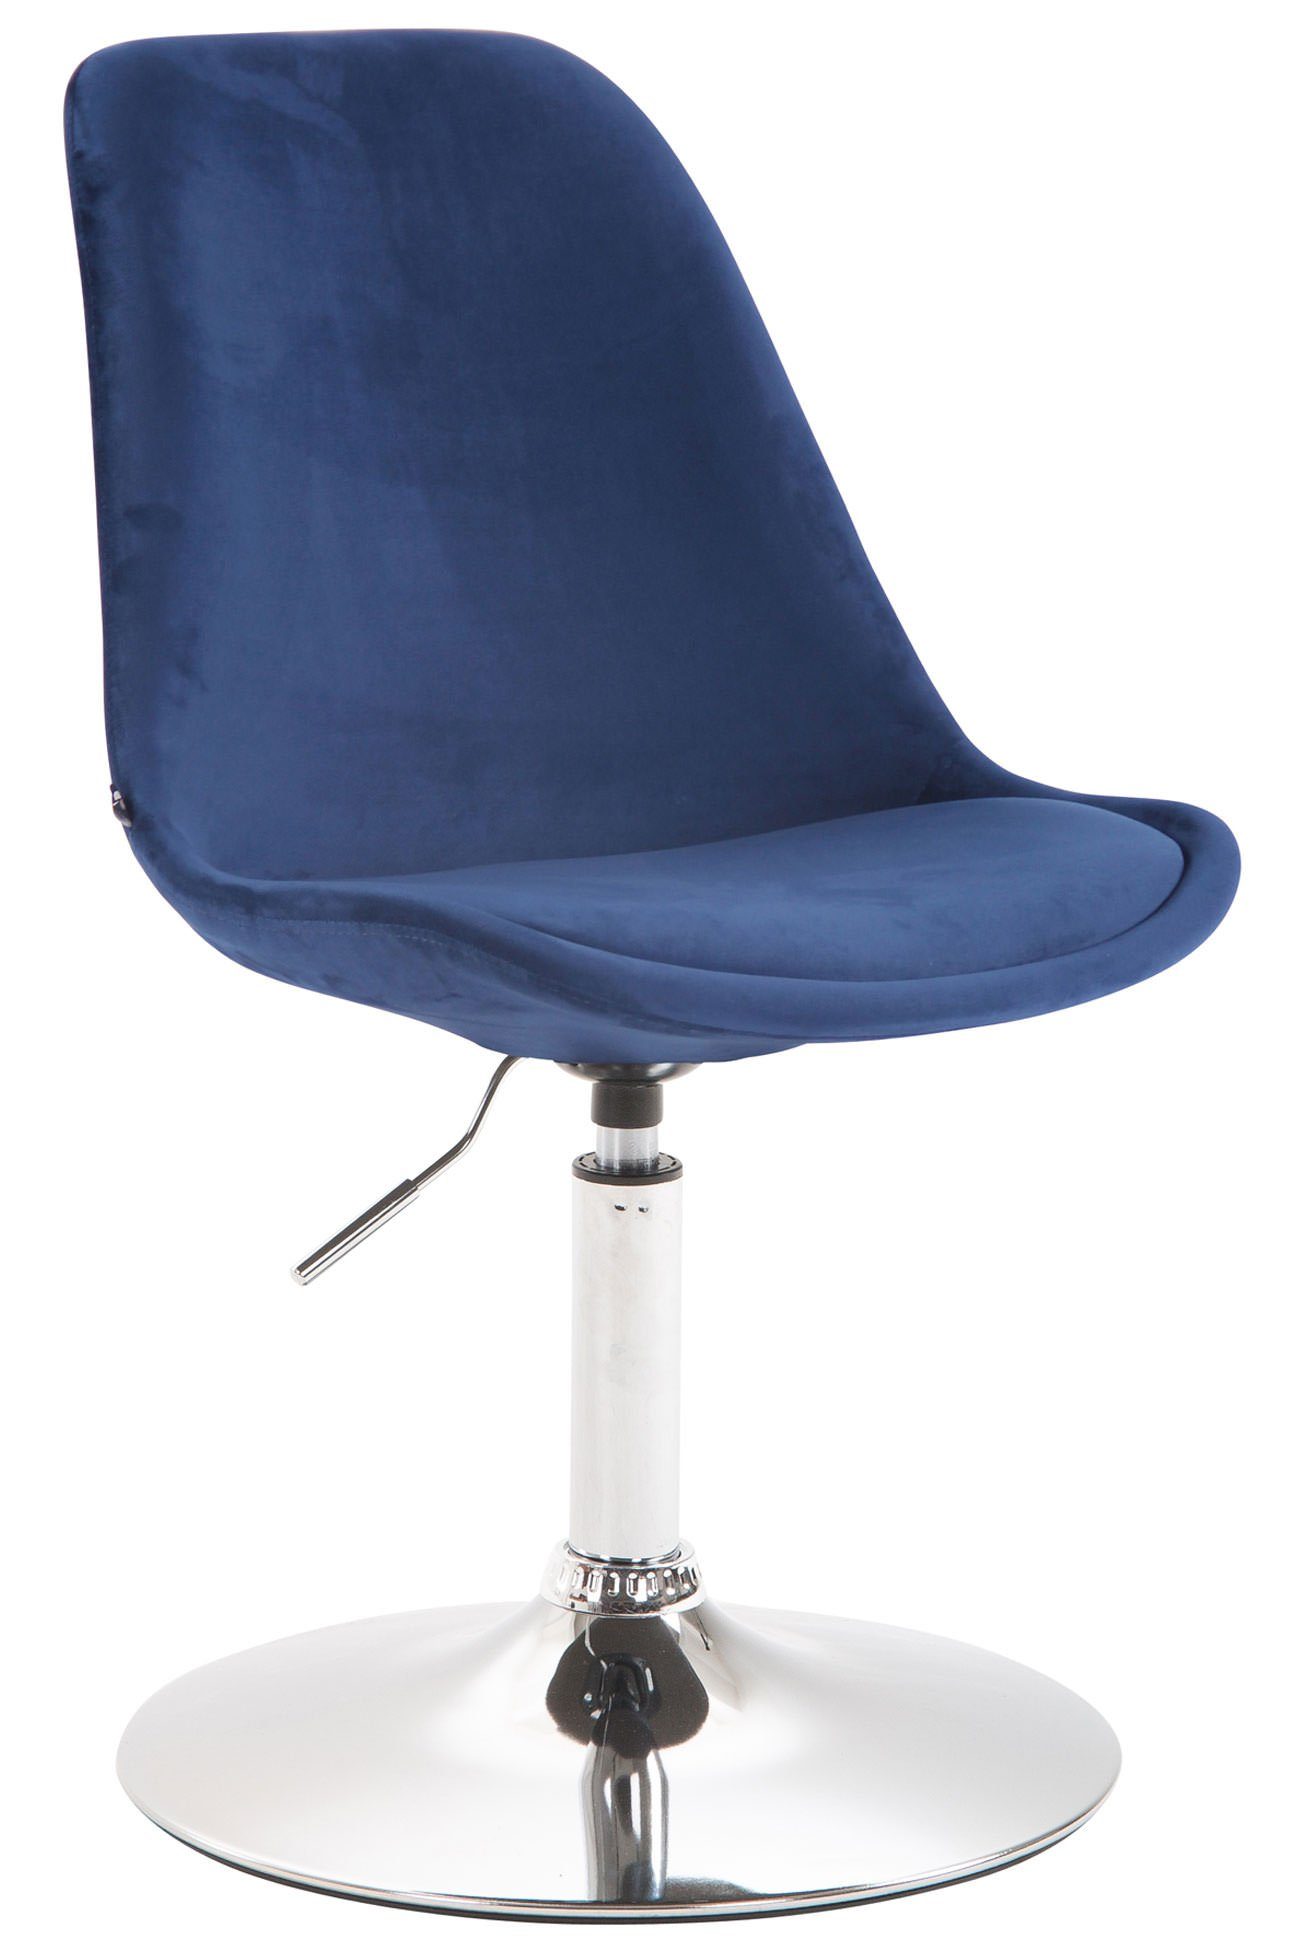 TPFLiving Esszimmerstuhl Mavic mit hochwertig gepolsterter Sitzfläche - Konferenzstuhl (Küchenstuhl - Esstischstuhl - Wohnzimmerstuhl - Polsterstuhl), Gestell: Metall chrom - Sitzfläche: Samt blau | Stühle